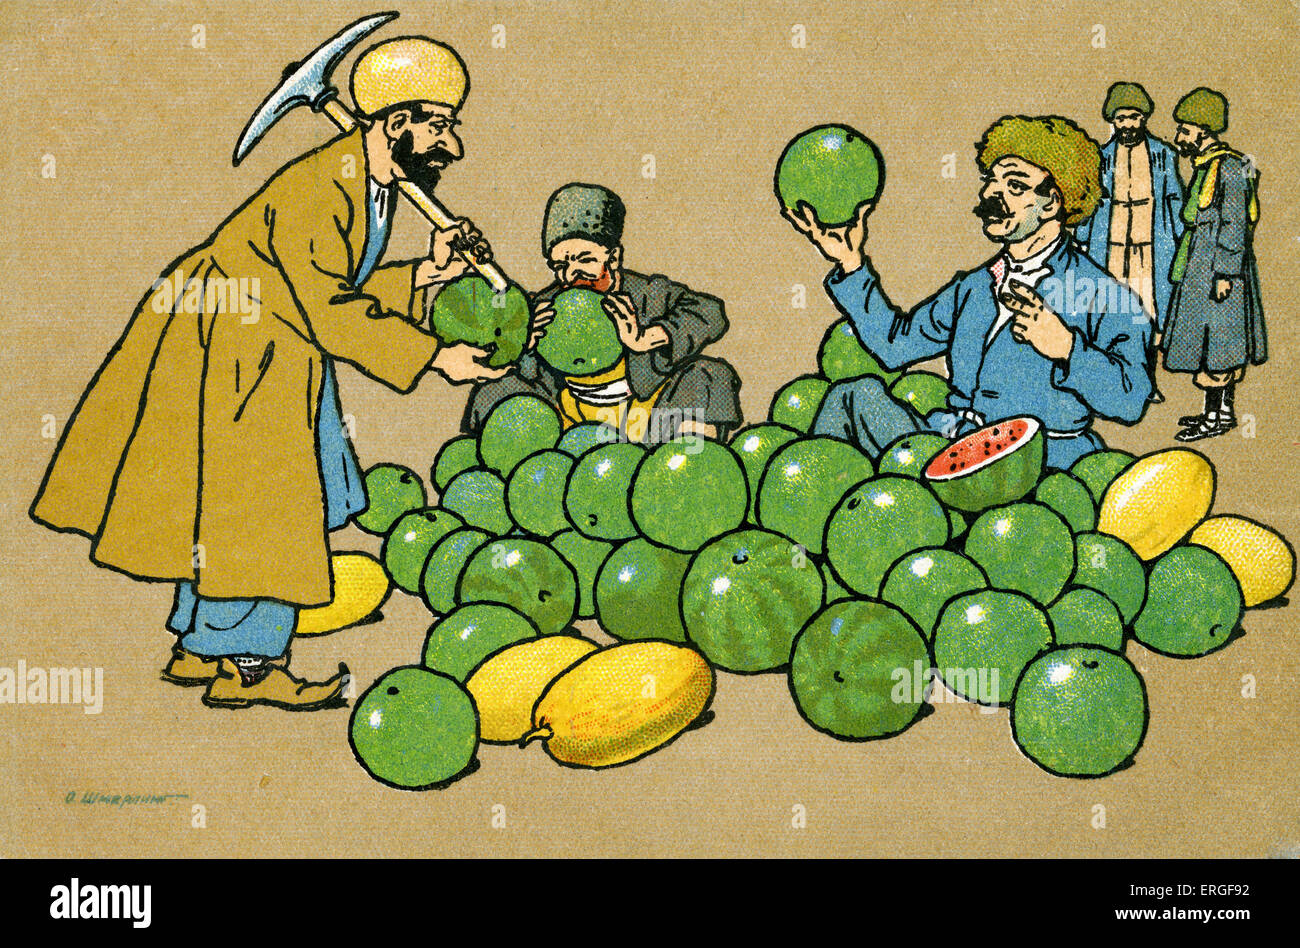 Alten Tiflis: Wassermelone Verkäufer. Anfang des 20. Jahrhunderts russischen Postkarte. Tiflis, Hauptstadt von Georgia (moderner Tag Tbilisi). Stockfoto